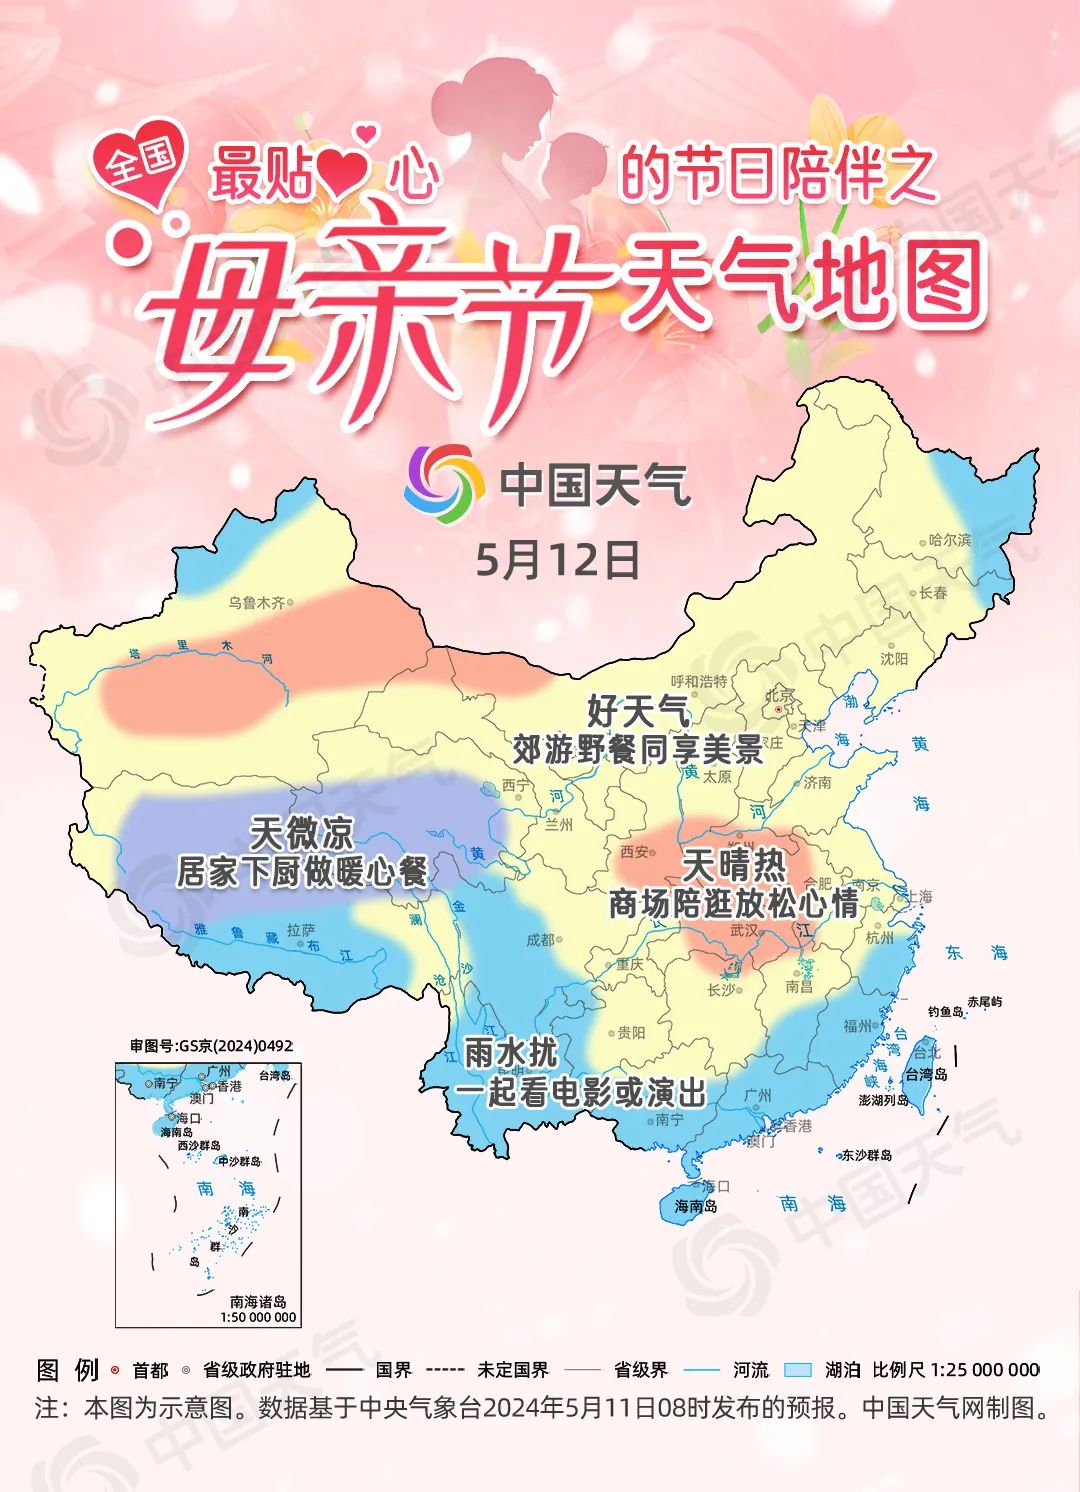 中国地图轮廓壁纸图片